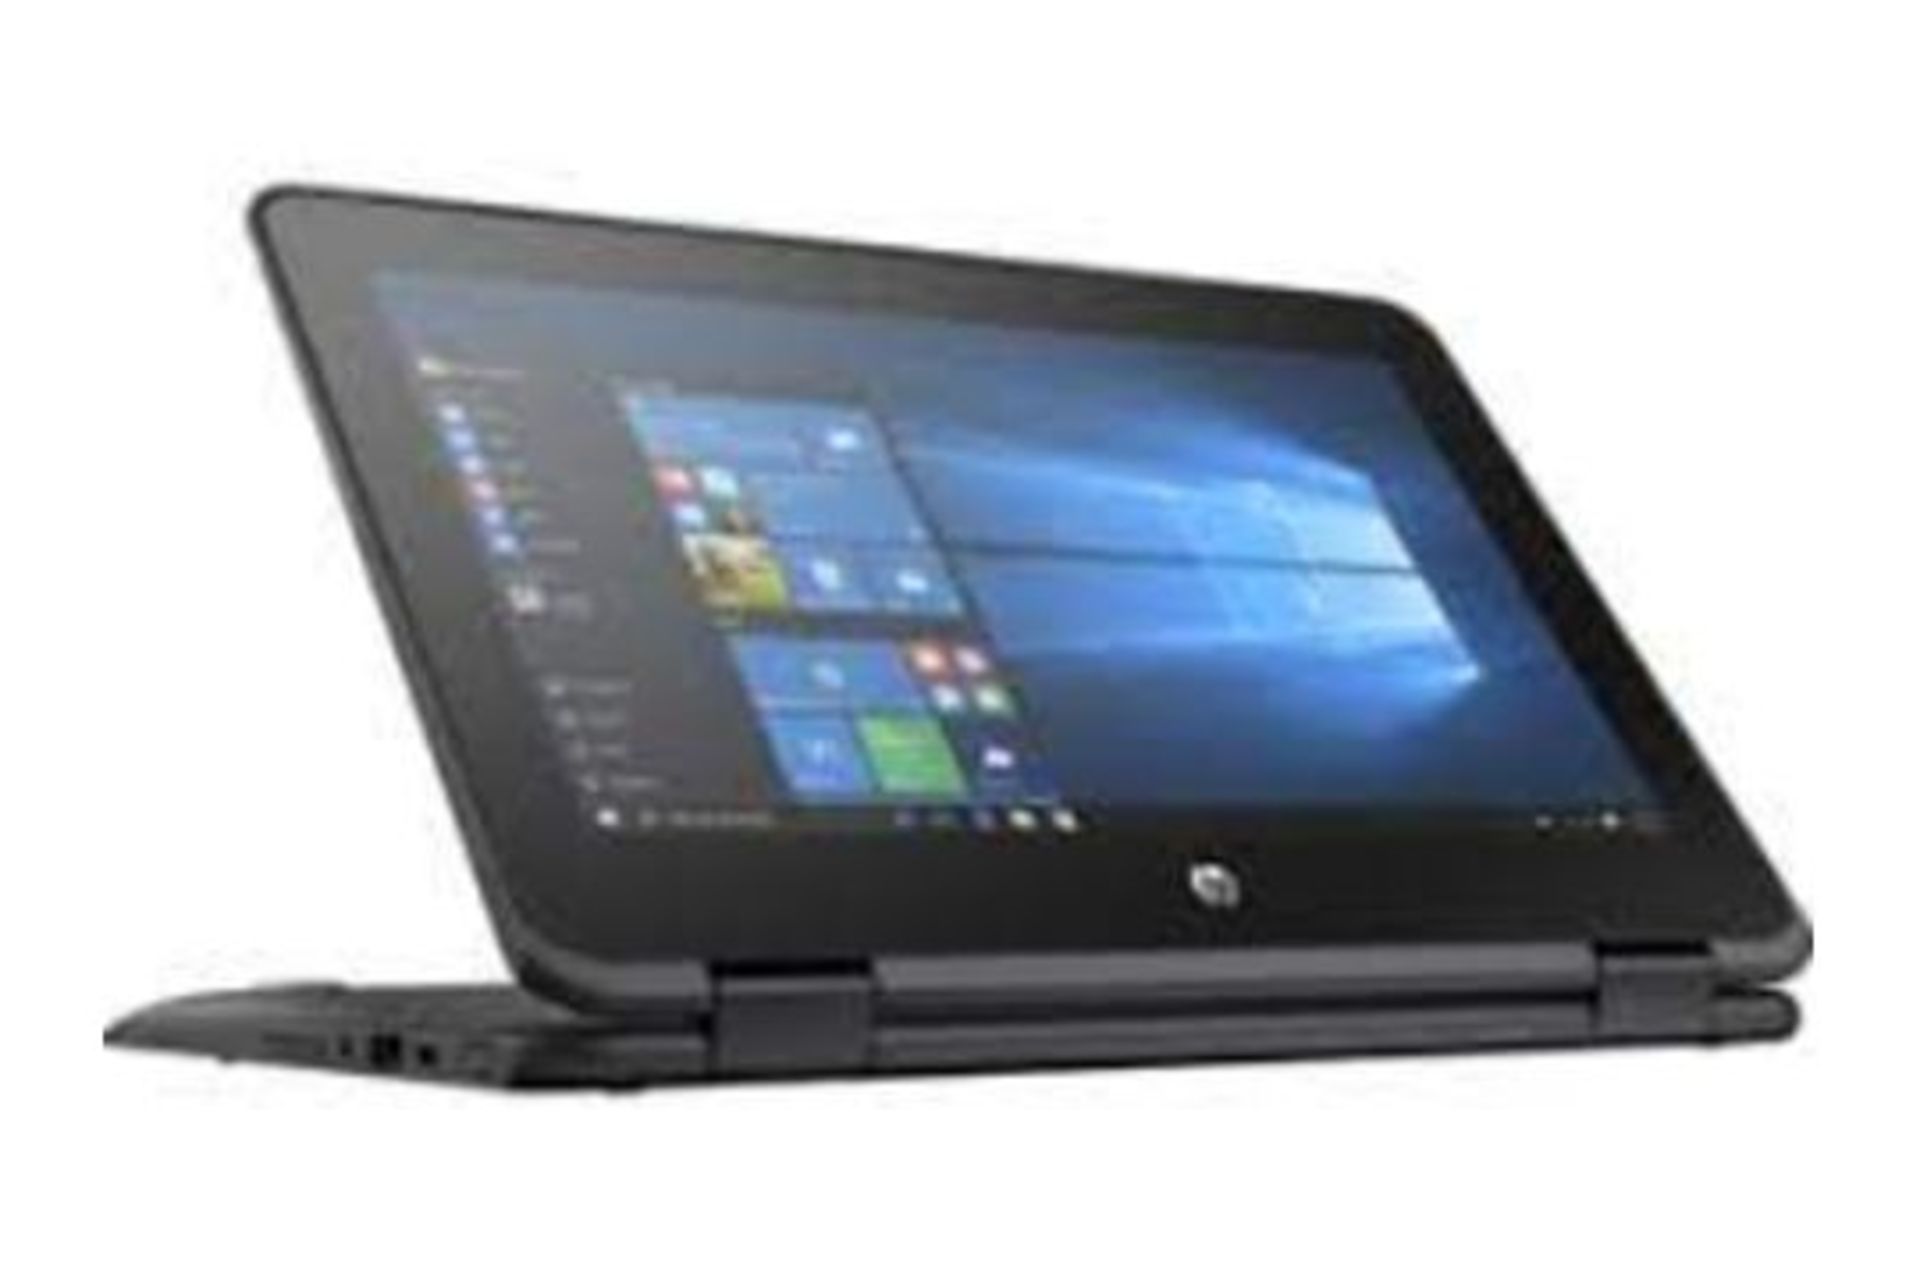 HP ProBook x360 11 G1 EE 2 IN 1 Laptop (Pentium Quad Core/4 GB/128 GB SSD) RRP £450. - Image 3 of 3